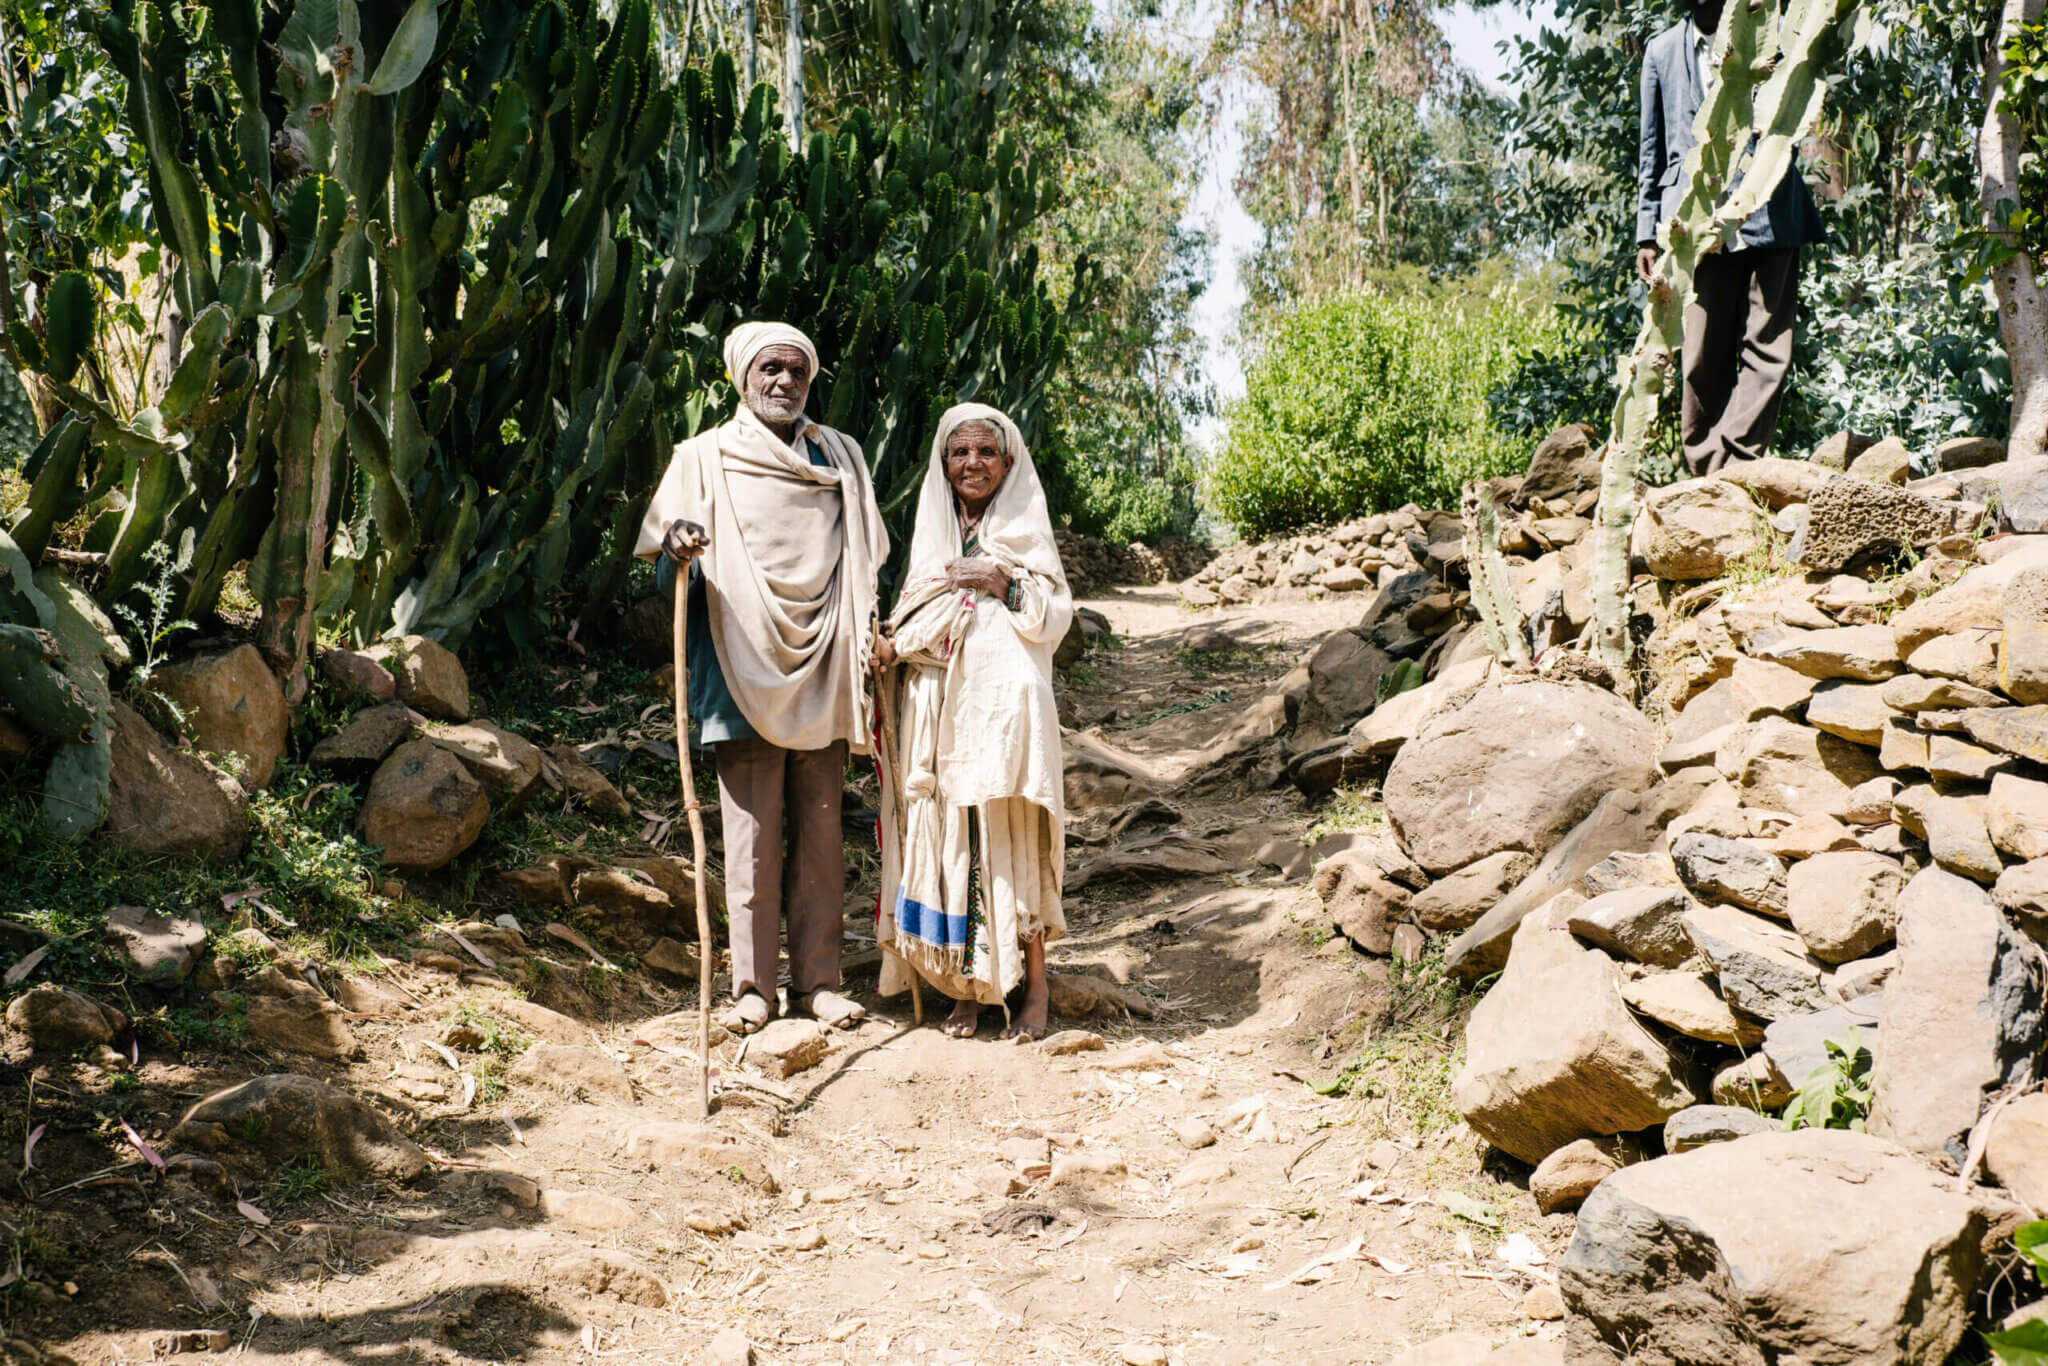 Mullu und ihr Mann sind auf dem Weg zu einem mobilen Einsatz von Licht für die Welt. Sie stehen in Äthiopien inmitten eines von Steinen gesäumten Weges und lächeln in die Kamera. Beide haben ein weißes Tuch um ihren Körper und Kopf gewickelt.